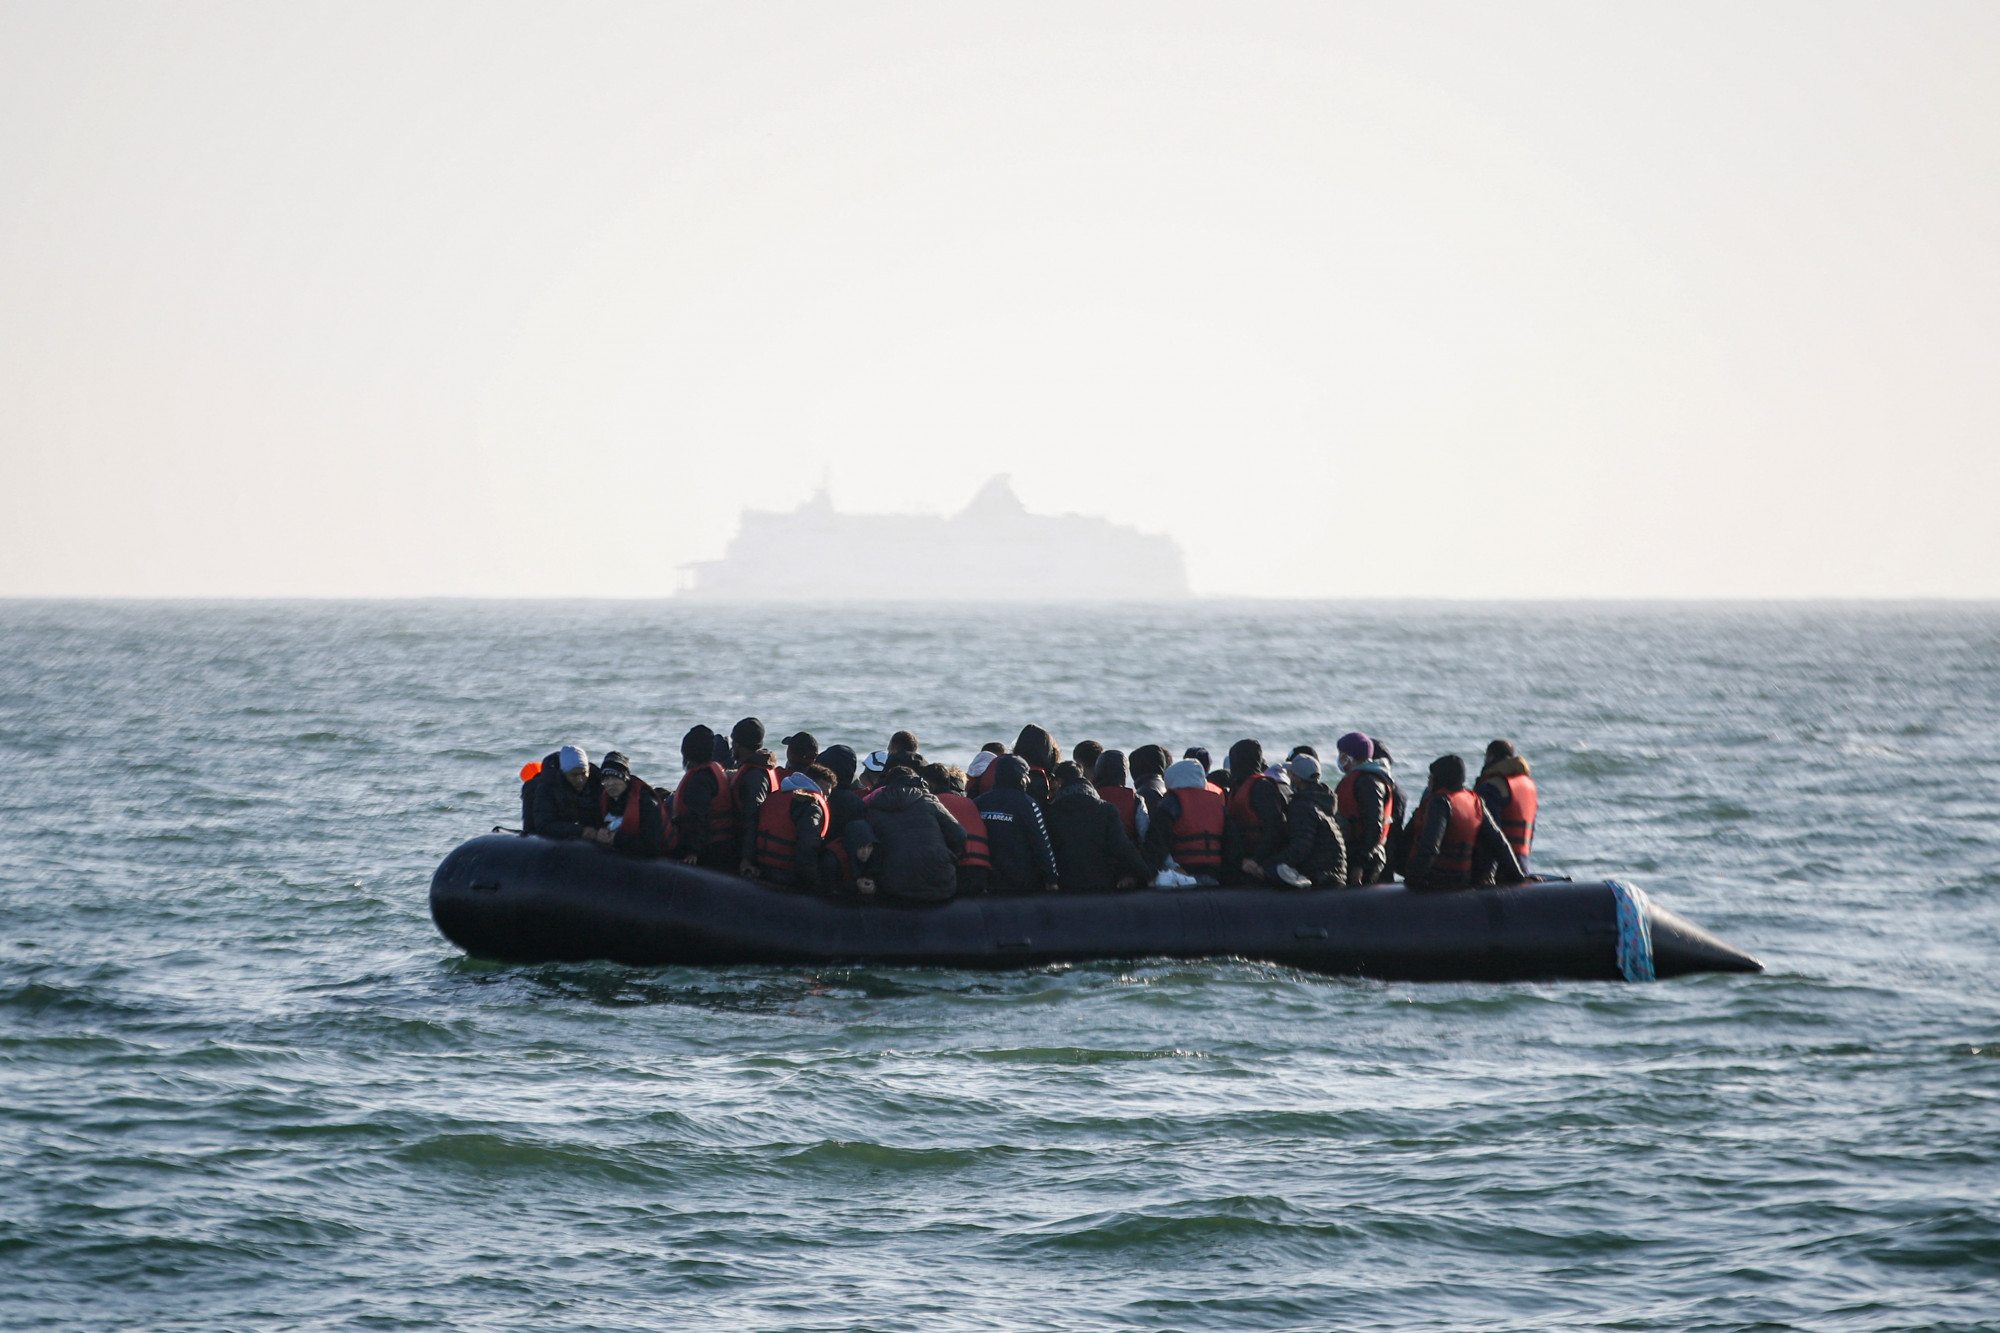 Hatan meghaltak, öt embert még keresnek, miután elsüllyedt egy menekülthajó a török partoknál